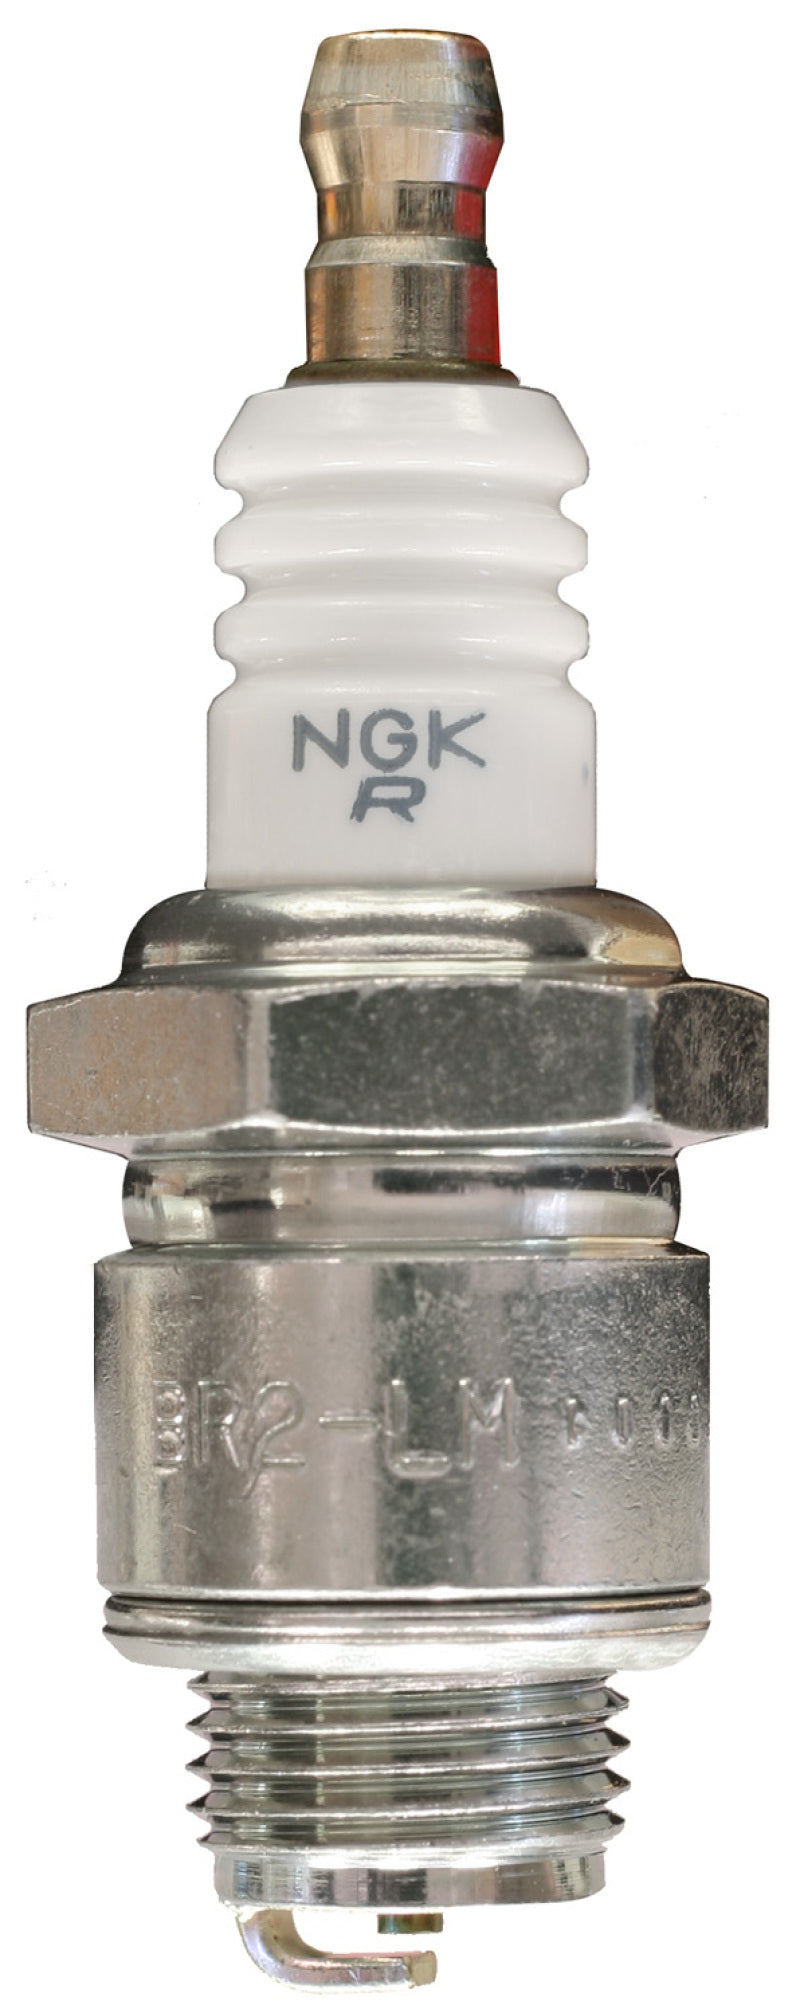 NGK Standard Spark Plug Box of 10 (BR2-LM)